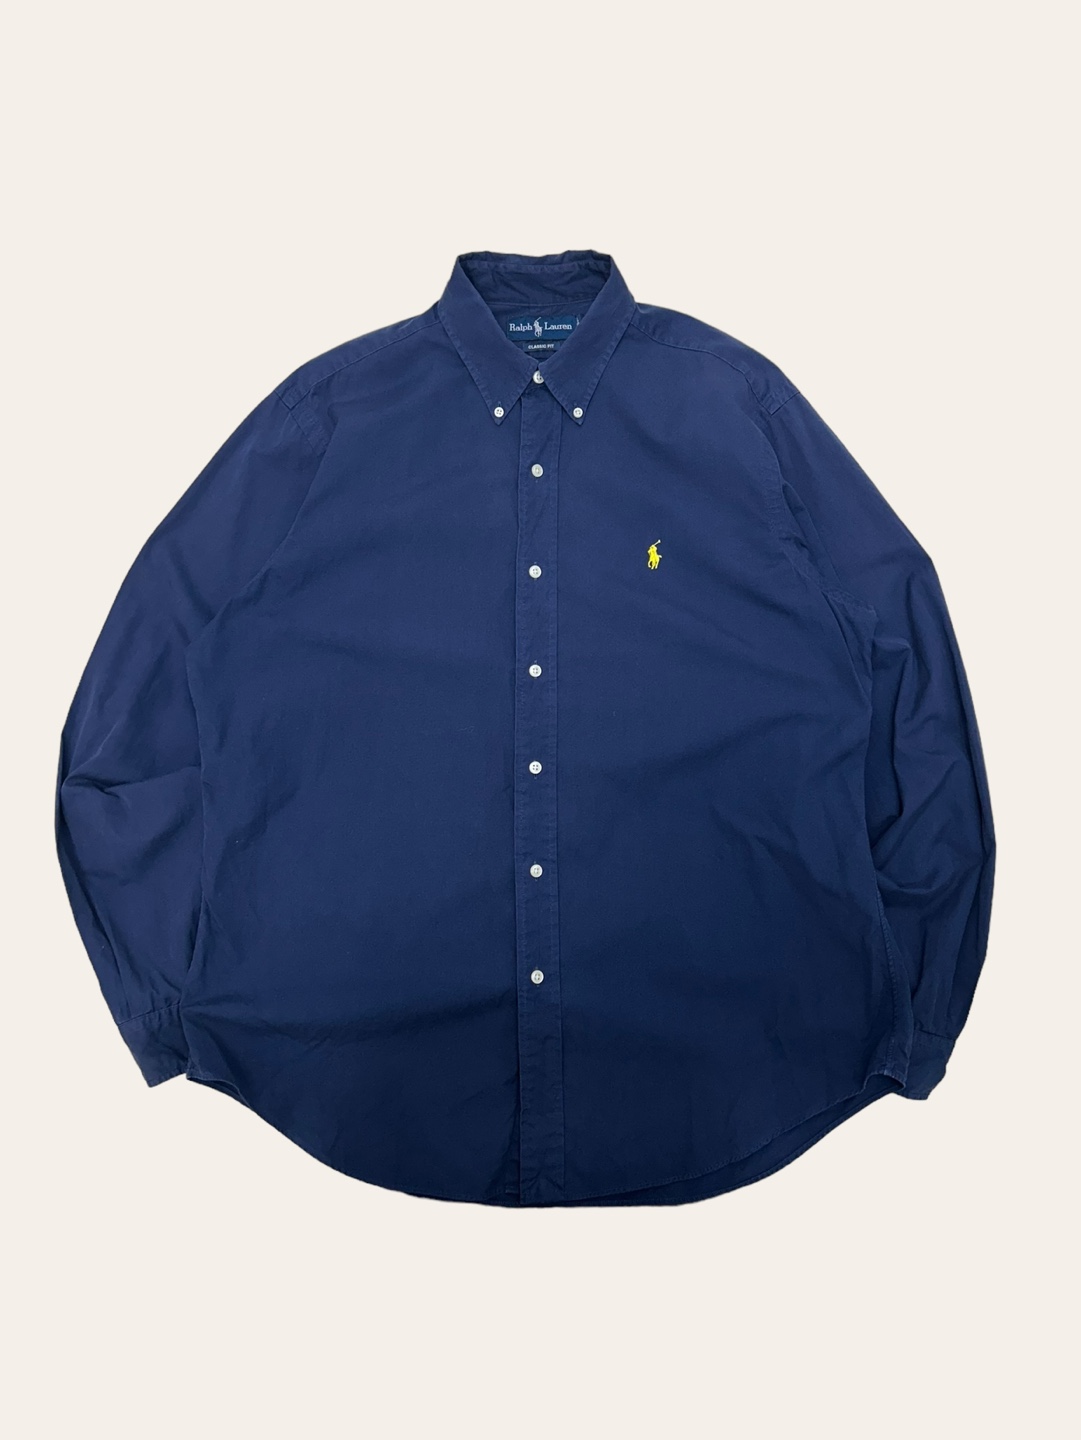 Polo ralph lauren navy solid shirt L